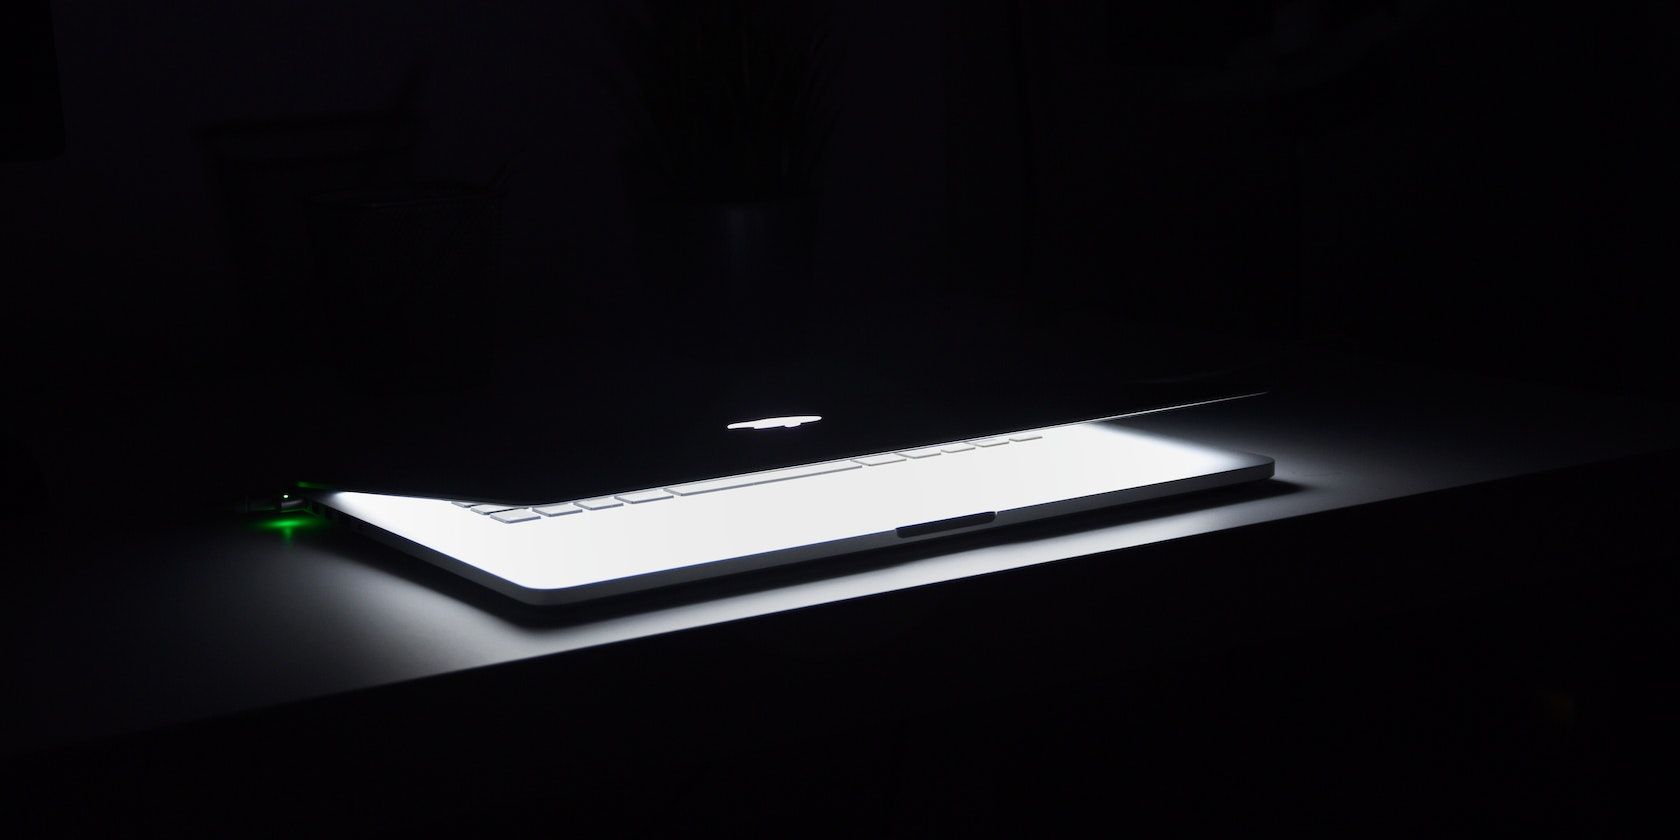 MacBook half opened in a dark room